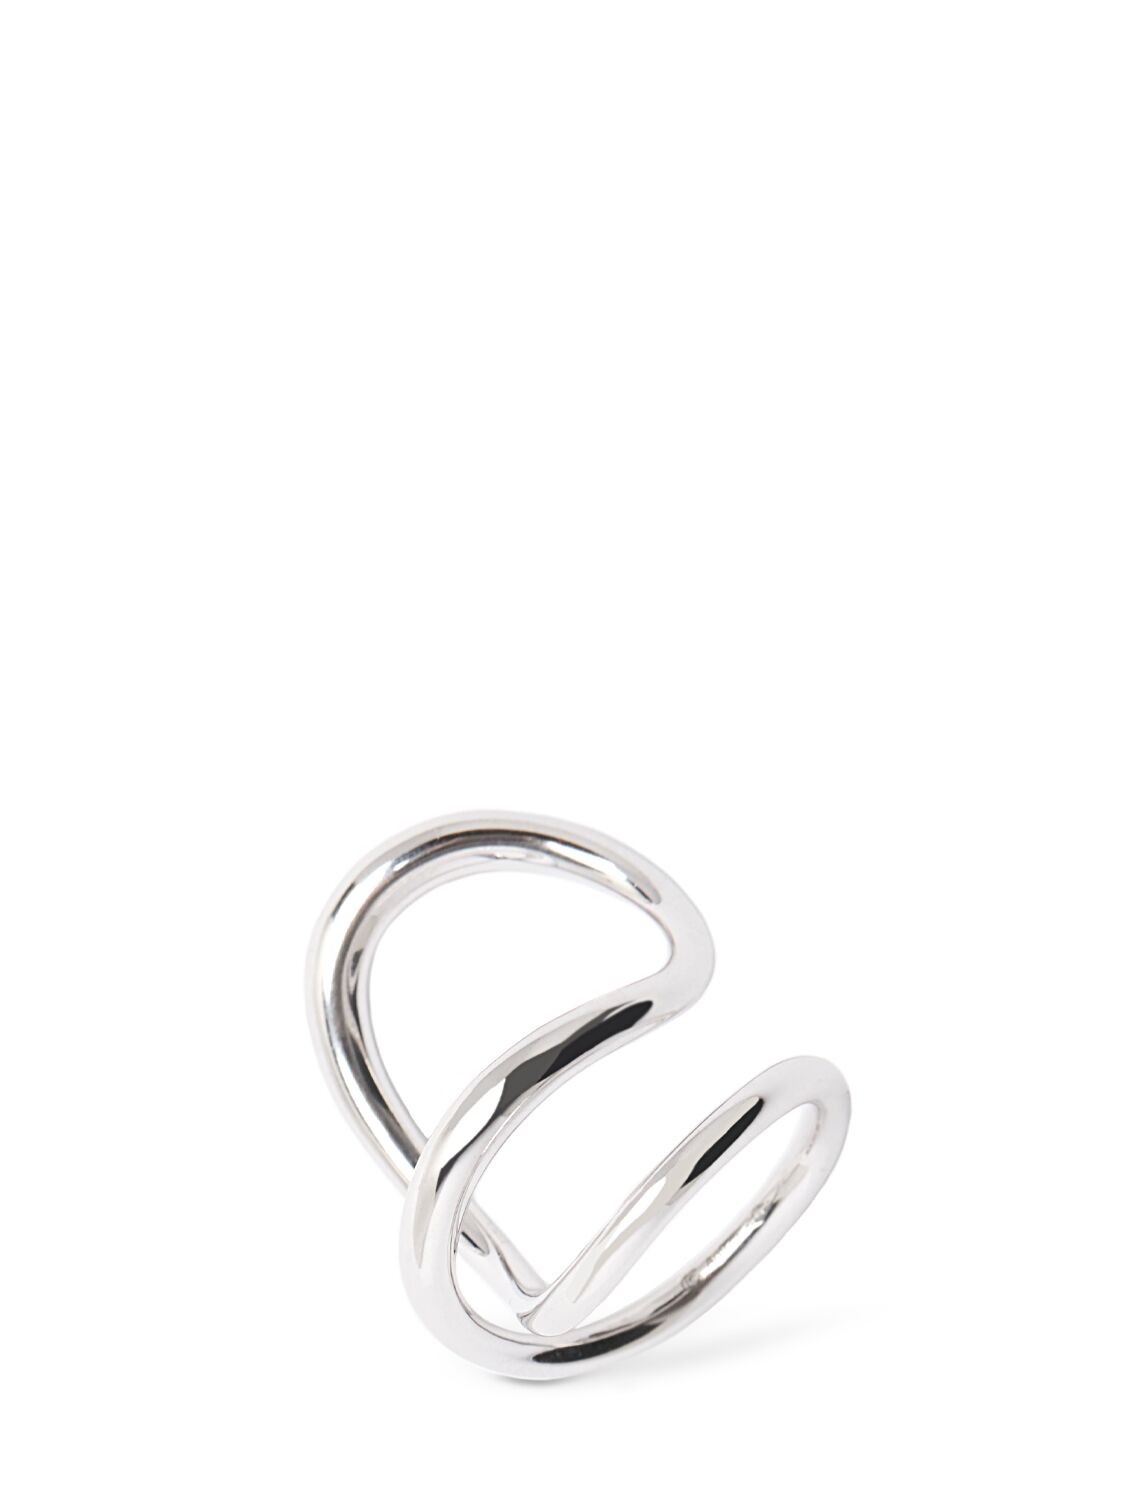 Charlotte Chesnais Bag Ribbon Silver Ring In 银色